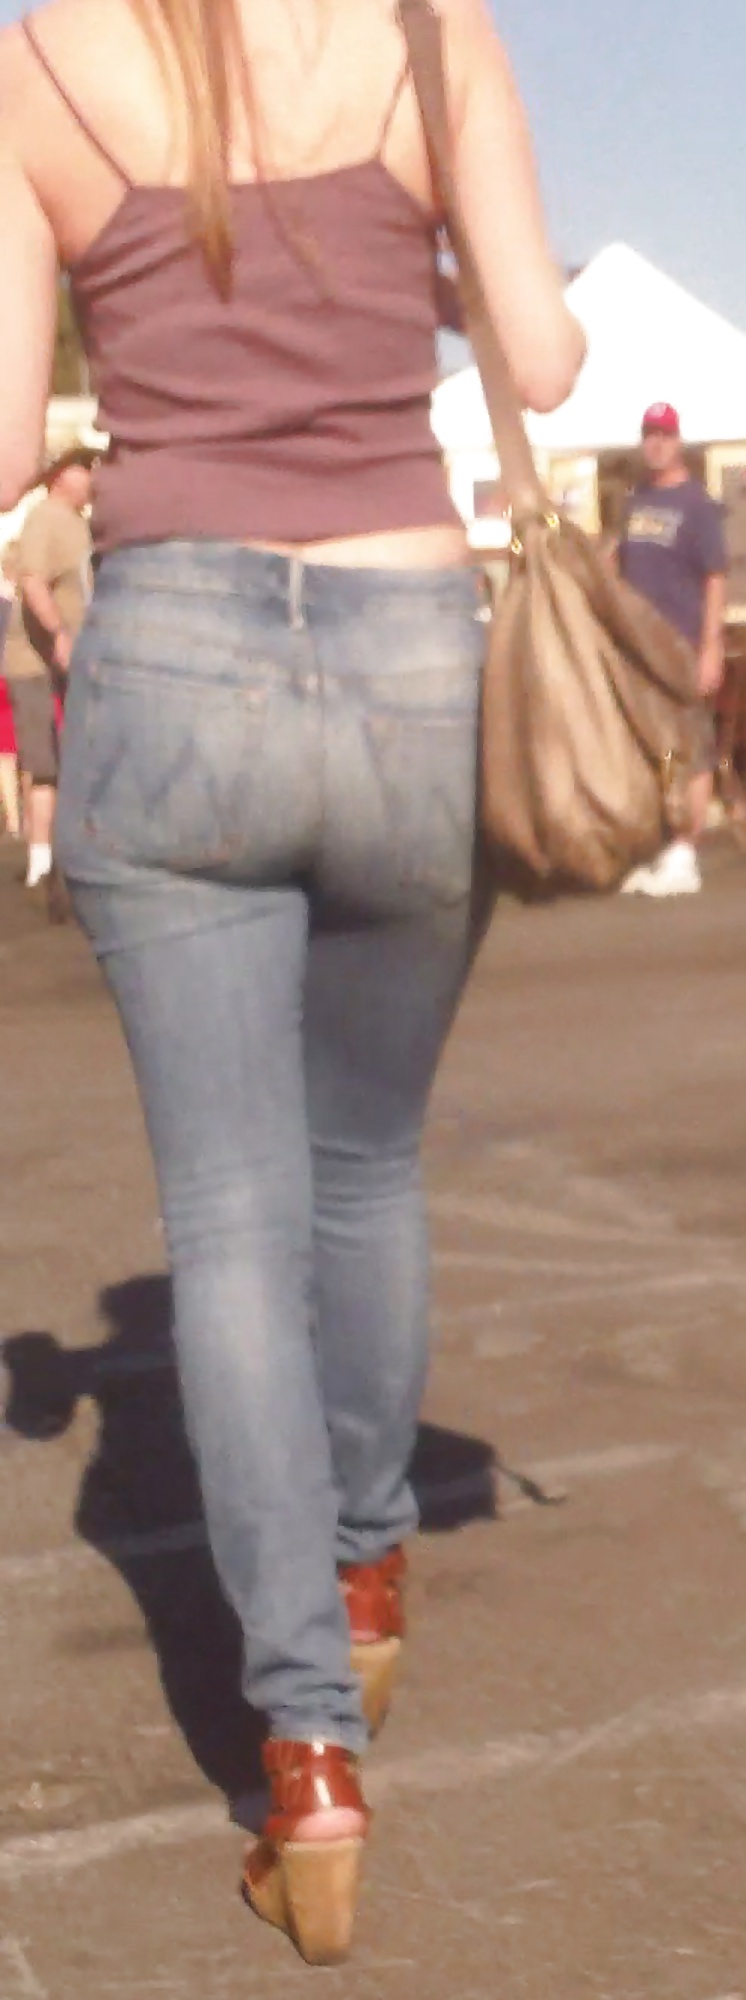 Popular teen girls ass & butt in jeans Part 6 #32009748